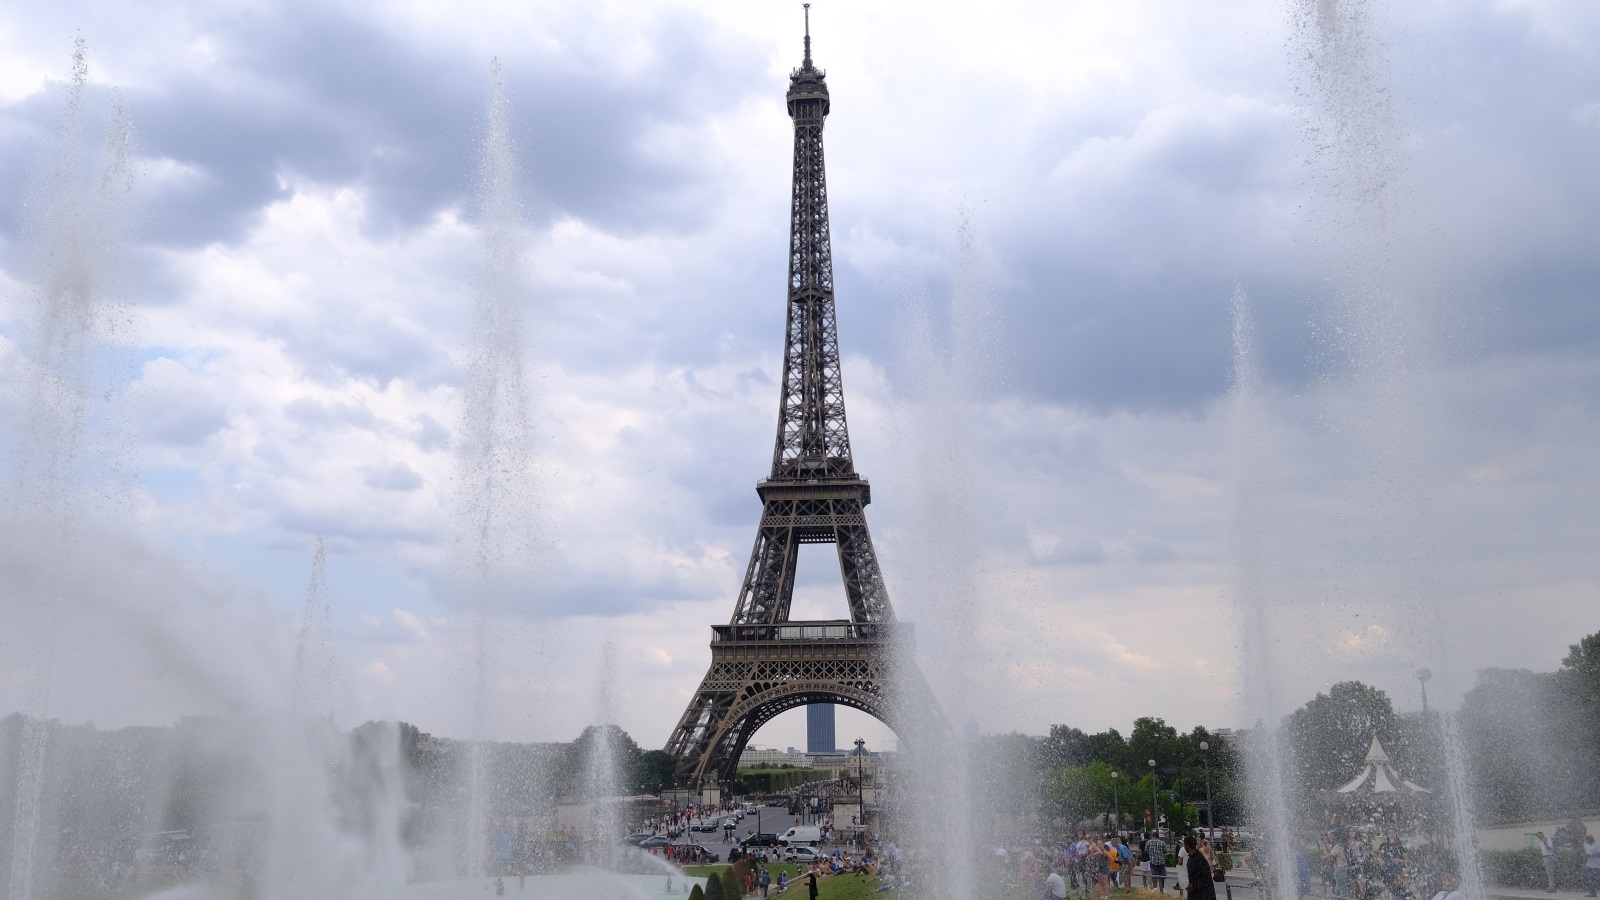 ‪برج إيفل في باريس بفرنسا ظل لمدة 41 سنة أطول مبنى بالعالم، وهو يستقبل سبعة ملايين زائر سنويا‬ (الأناضول)